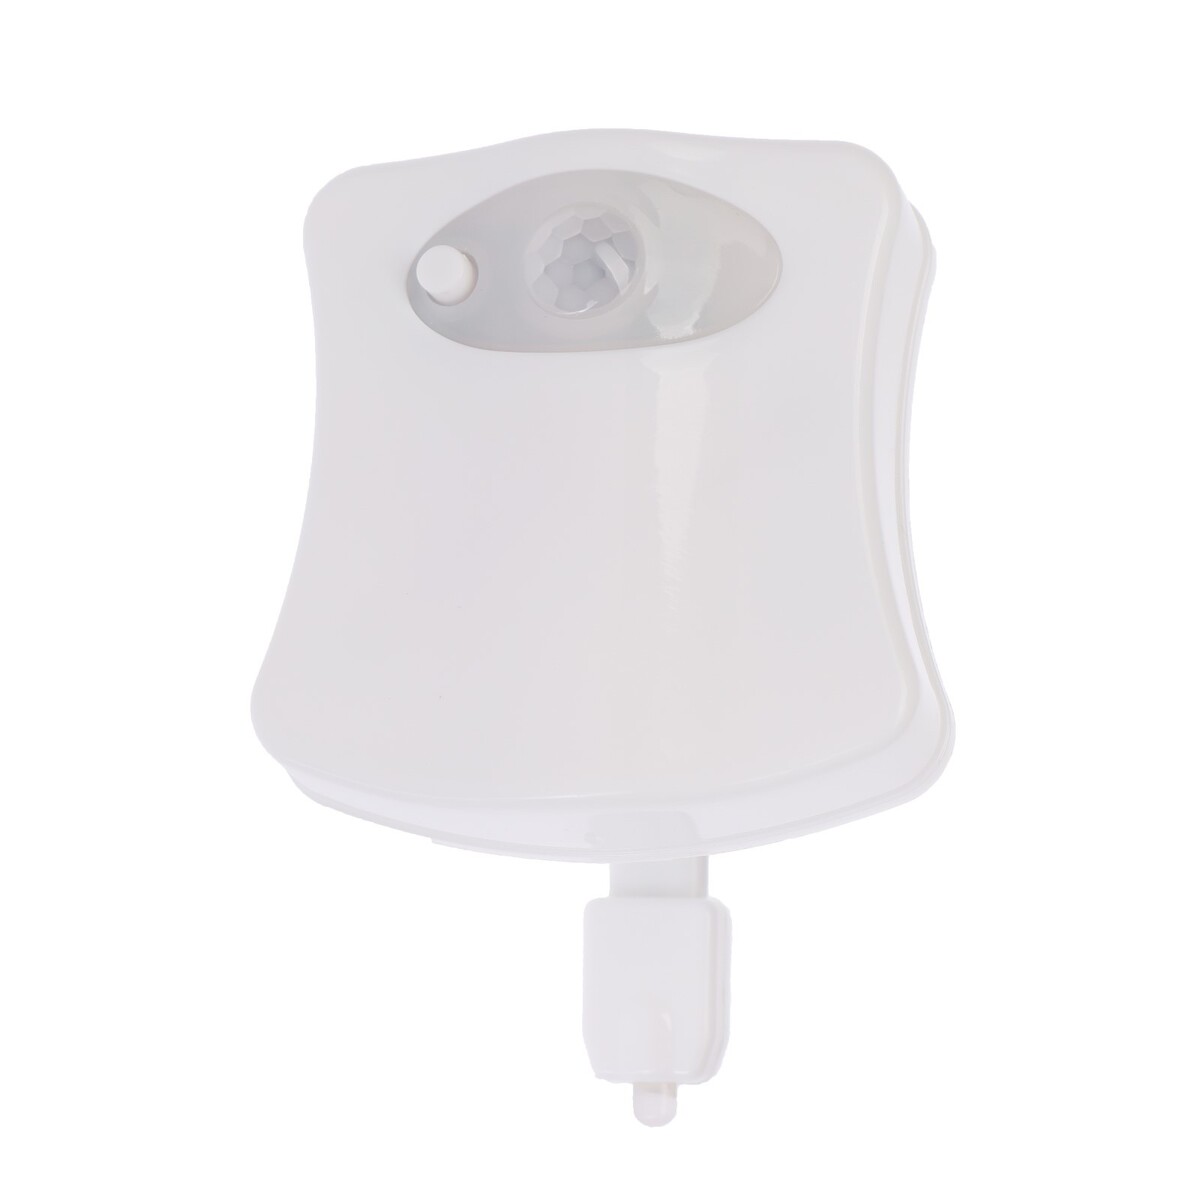 Светильник для туалета с датчиком движ., rgb, 3 вт, ip68, от бат. 3*aaa, белый светильник светодиодный t5 6 вт 540 лм 300 мм 6500к 220в белый свет